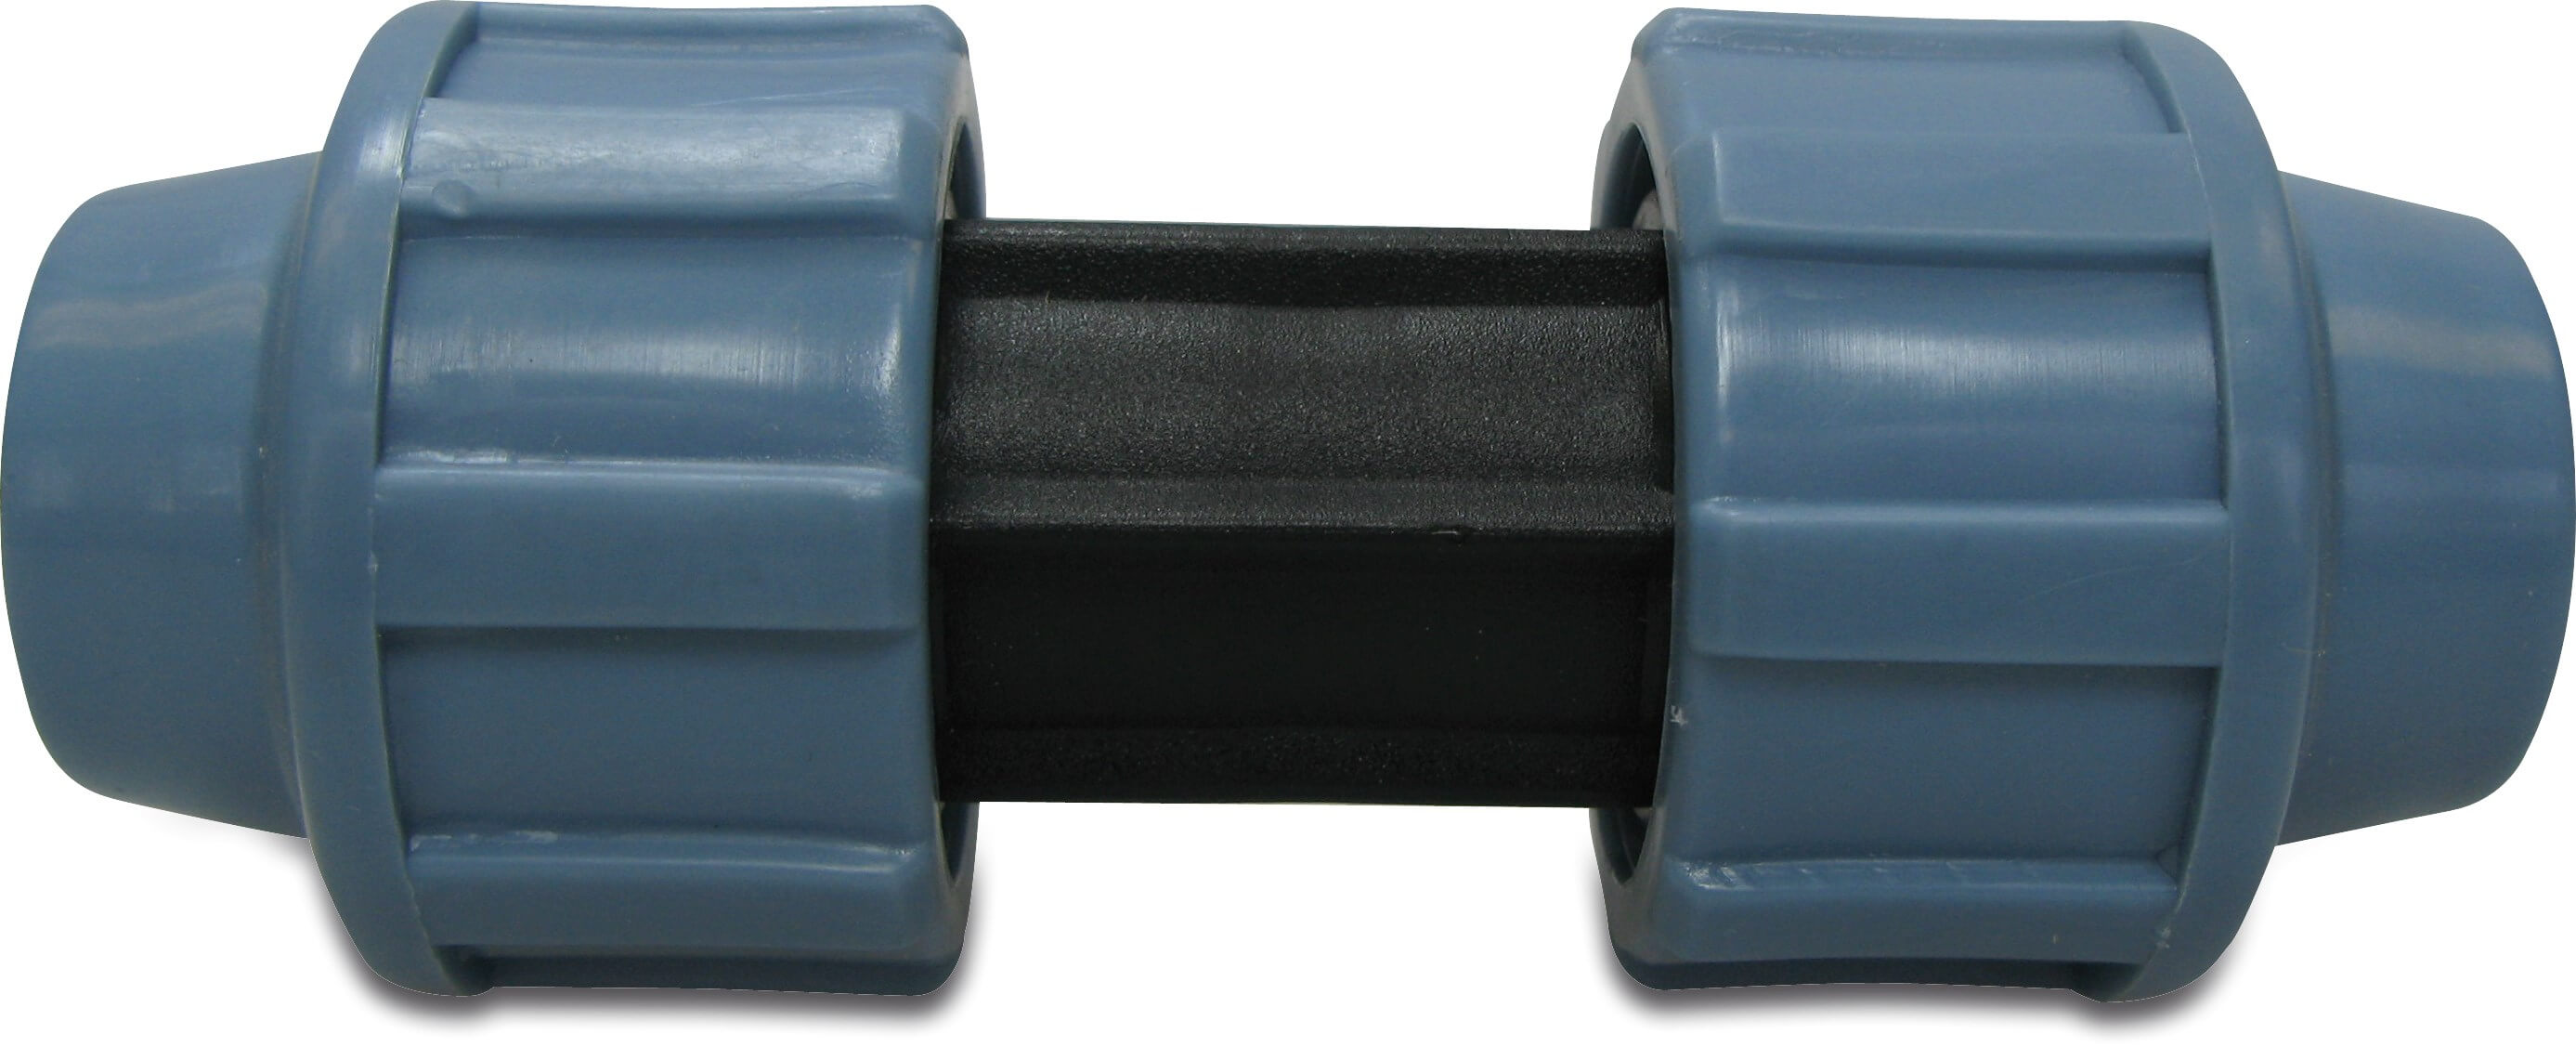 Unidelta Kobling PP 16 mm spænd 16bar sort/blå DVGW/KIWA/WRAS